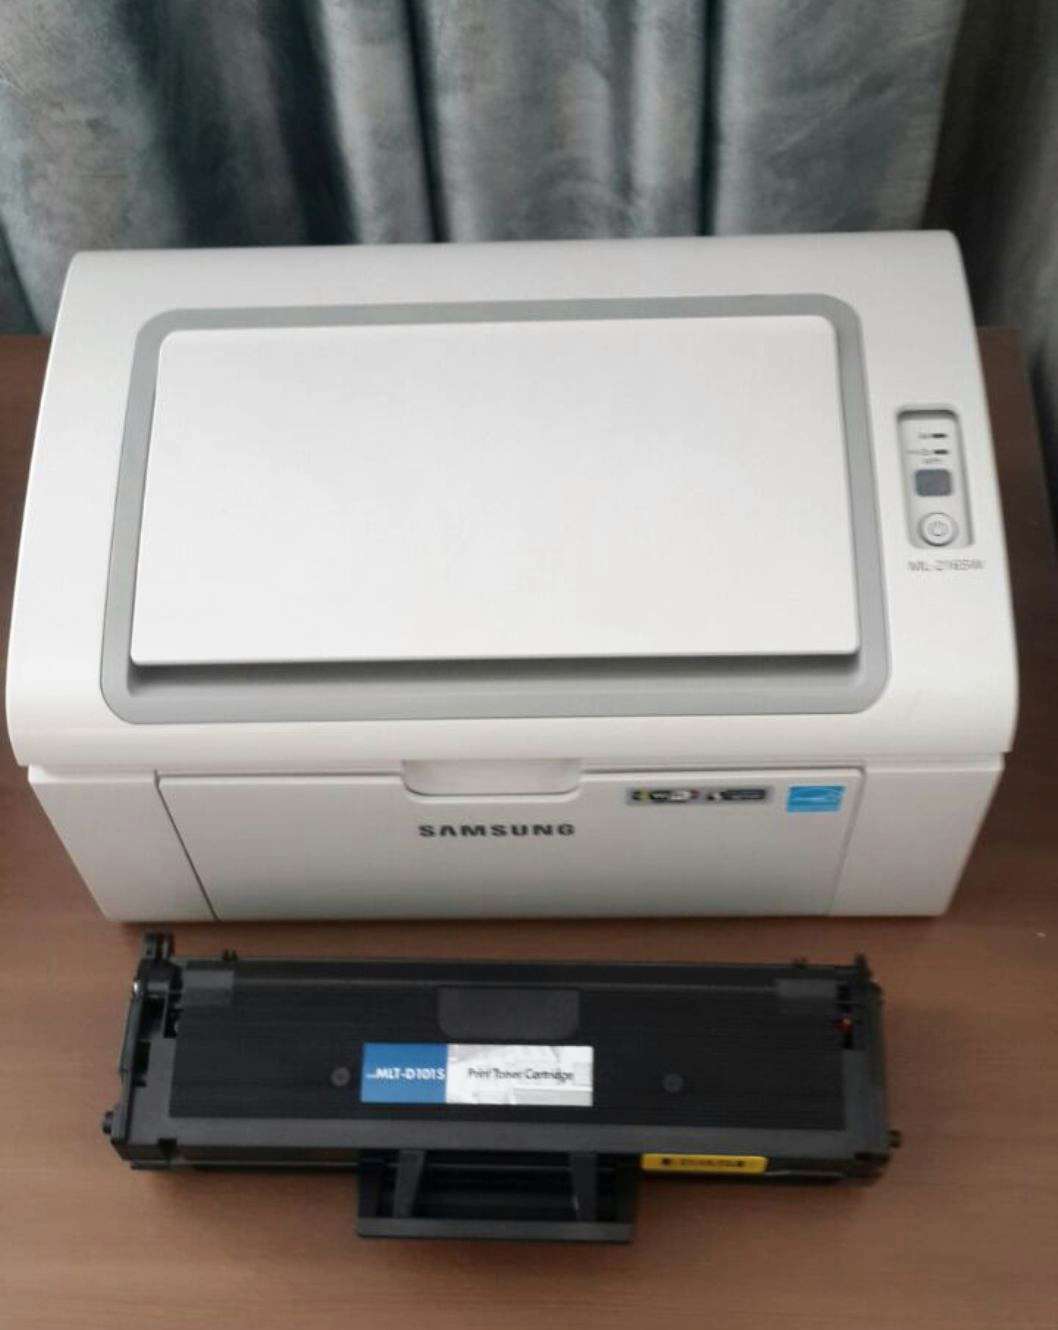 Scx 3400 принтер купить. Лазерный принтер Samsung ml-2160. Принтер самсунг 2160. Принтер лазерный самсунг мл 2160. Принтер самсунг 3400.